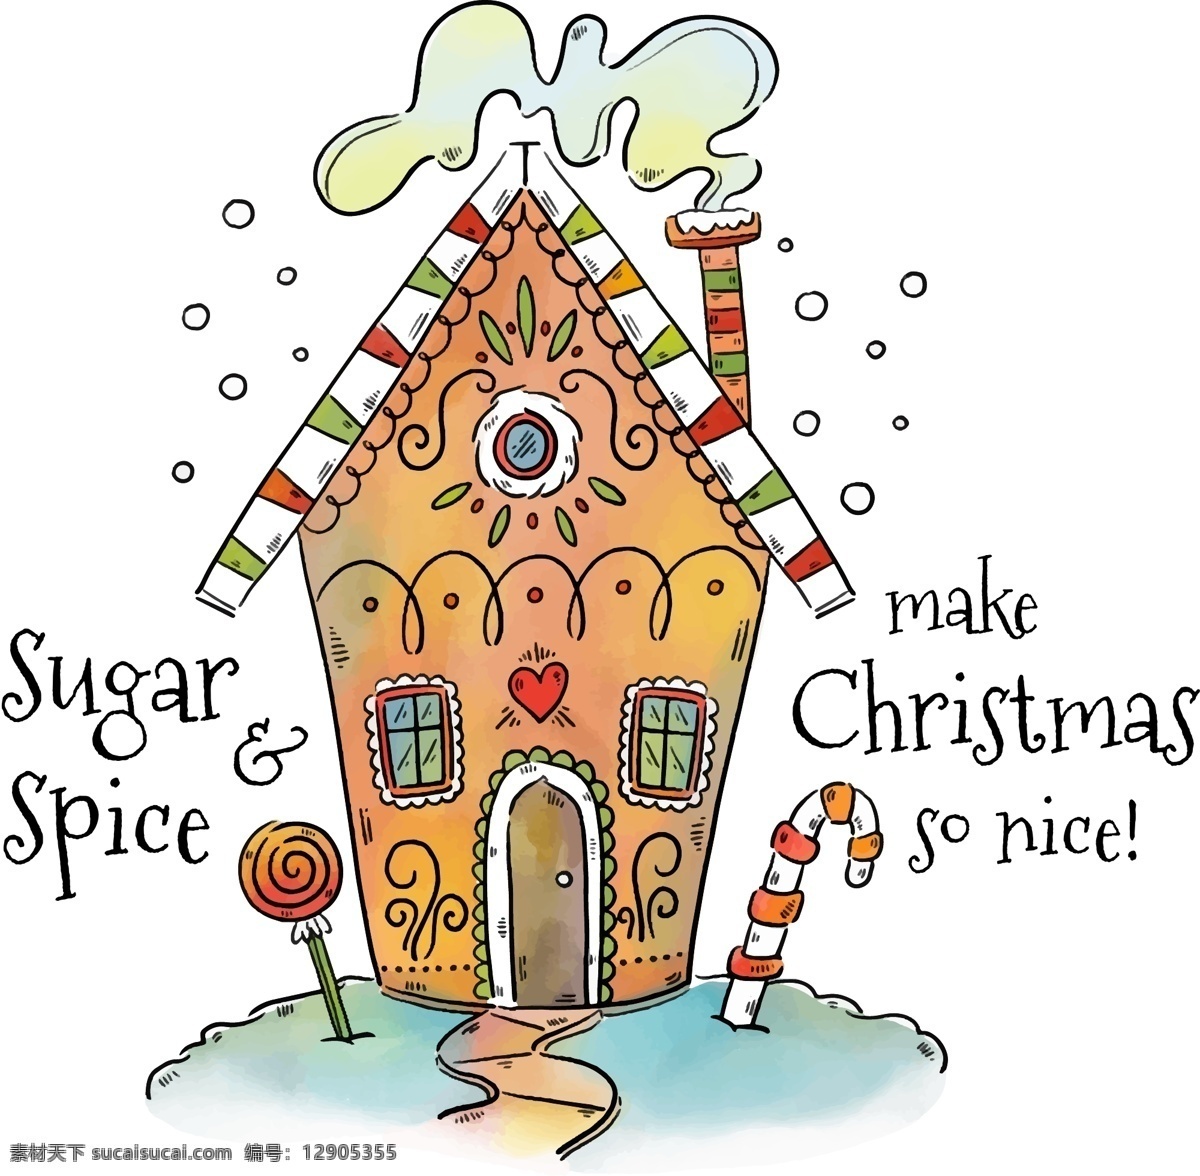 棒棒糖 圣诞 圣诞节 矢量素材 手绘 手绘插画 手绘食物 手绘水彩 手绘甜品 屋子 水彩 矢量 插画